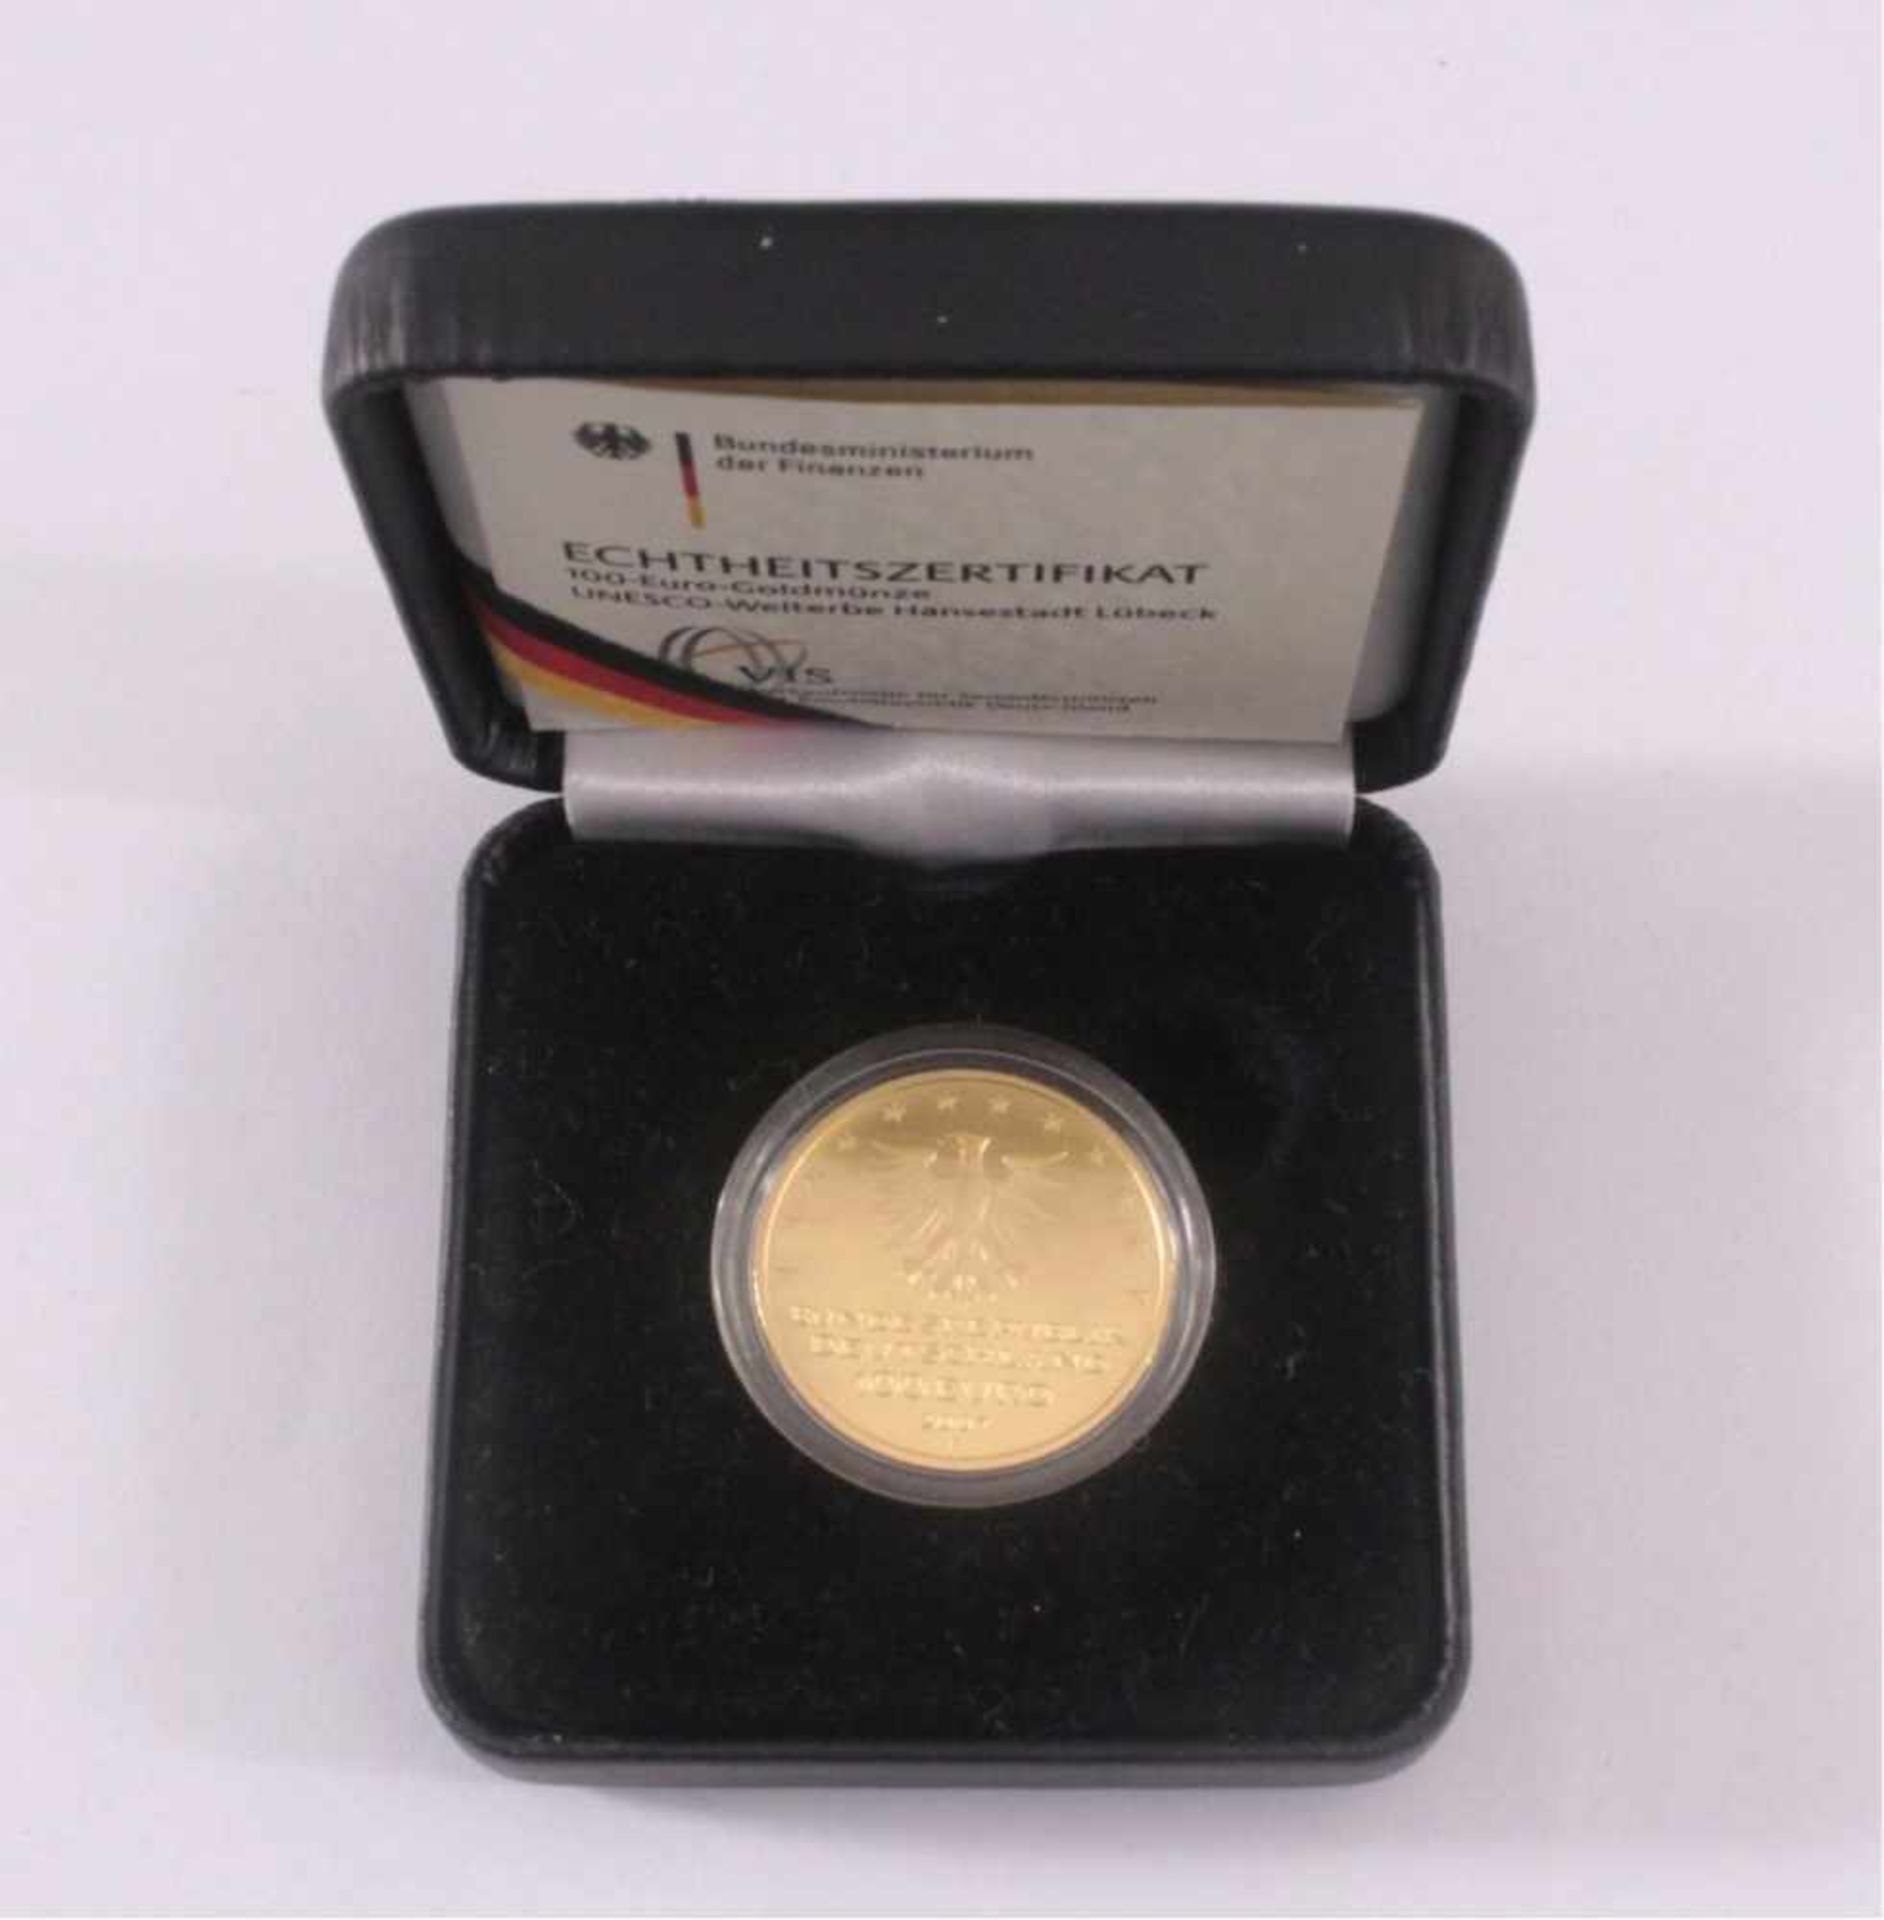 100 Euro Goldmünze 2007, Lübeck15,55 Gramm, 999er Gold, im Originaletui mit Zertifikat - Image 3 of 4